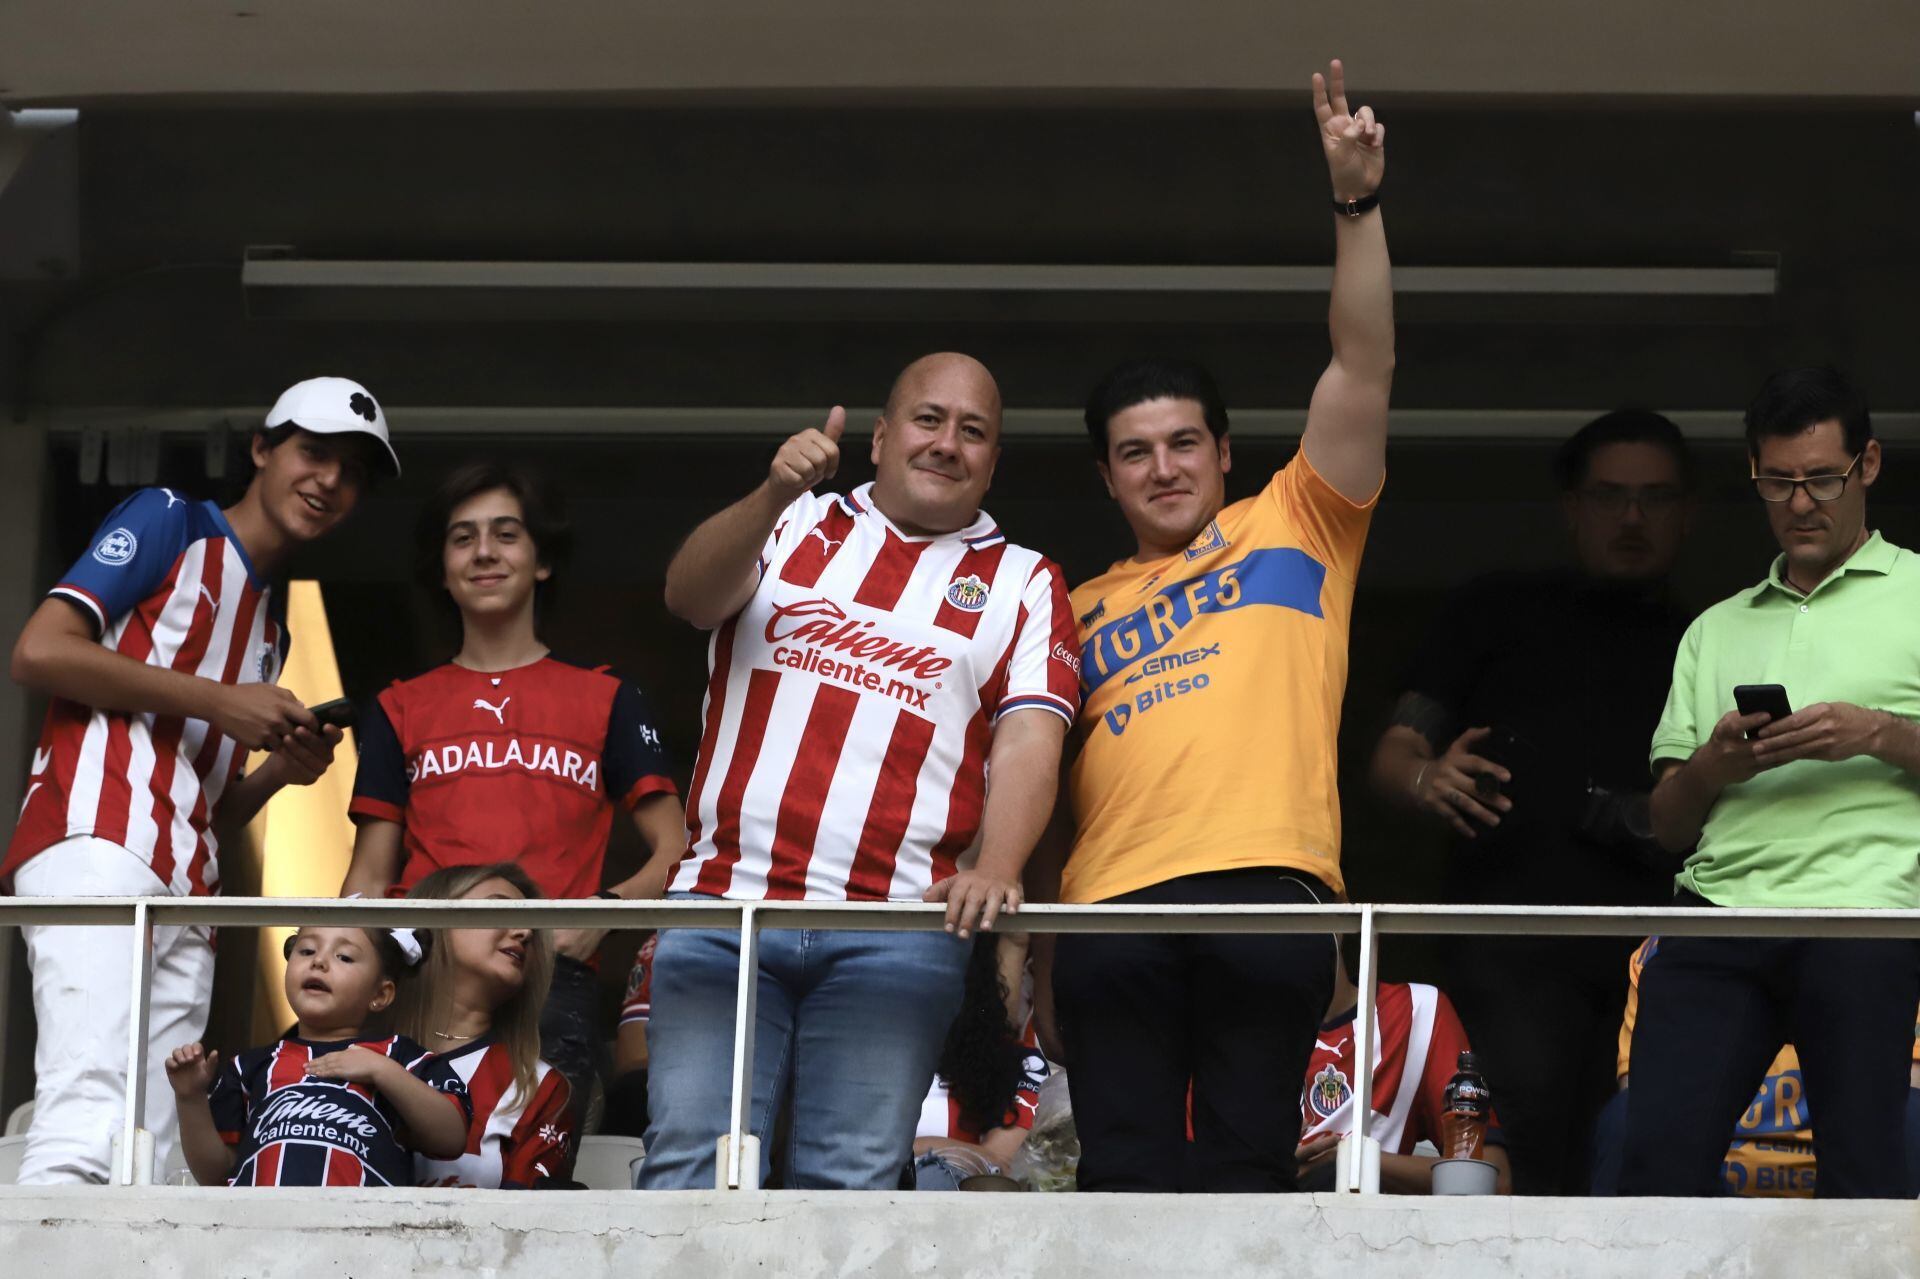 El gobernador de Jalisco, Enrique Alfaro y el gobernador de Nuevo León, Samuel García en uno de los palcos previo al partido de fútbol en la vuelta por el campeonato del Torneo Clausura 2023 de la Liga MX, en el Estadio Akron.